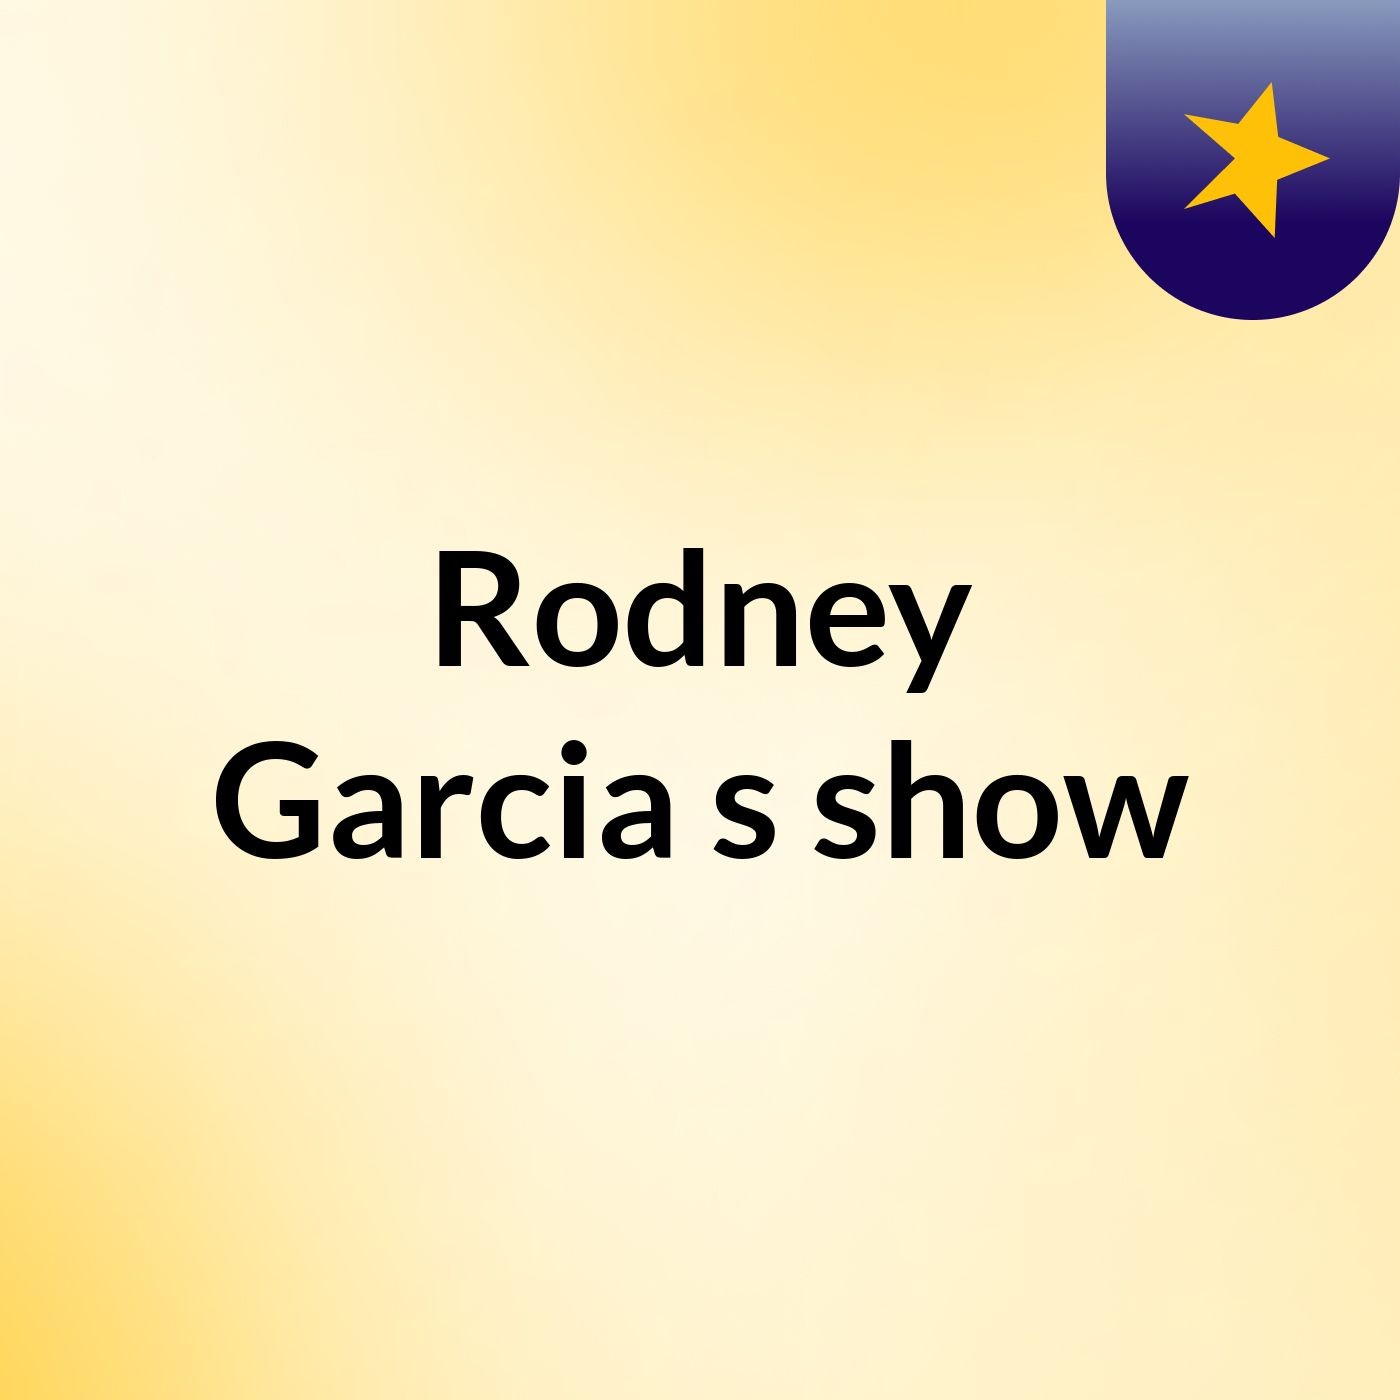 Rodney Garcia's show